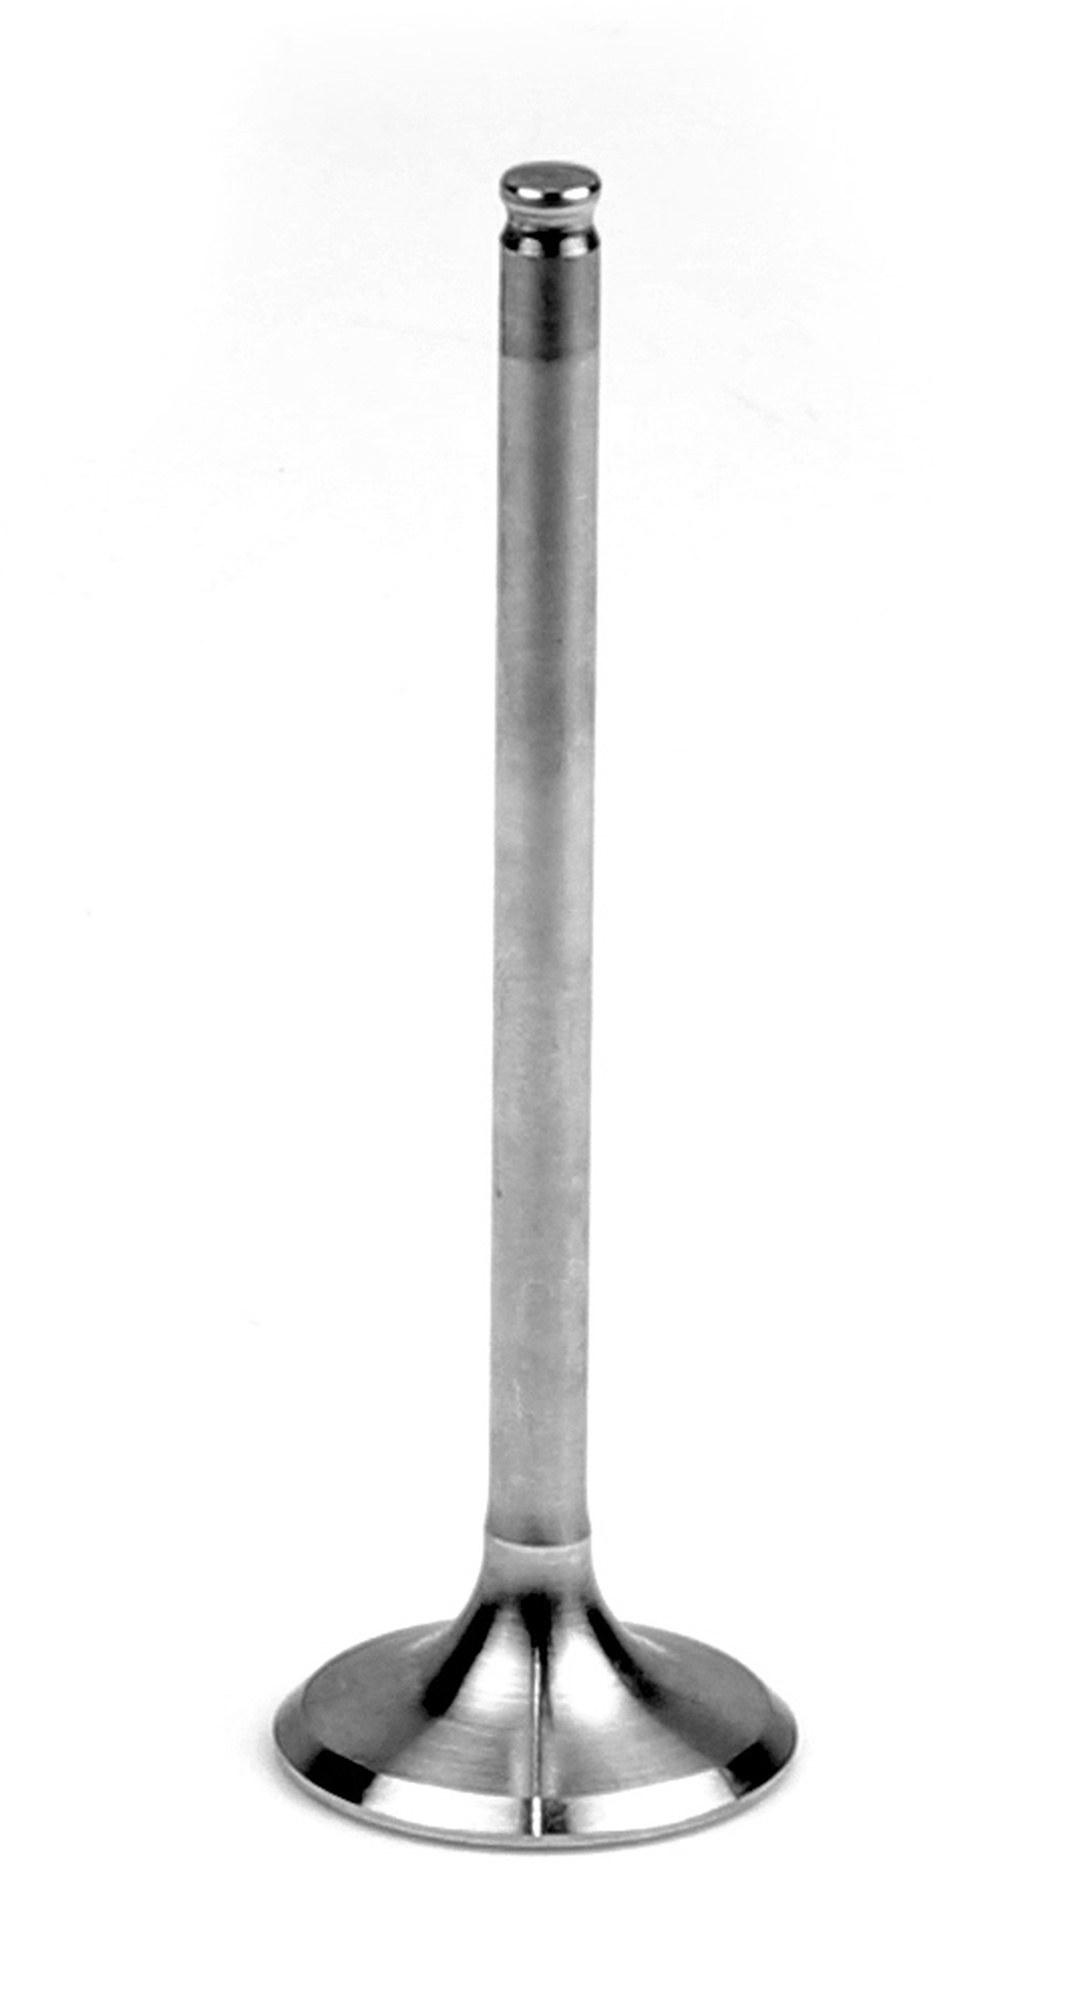 Obrázek produktu sací ventil titanový (central intake valve), Athena